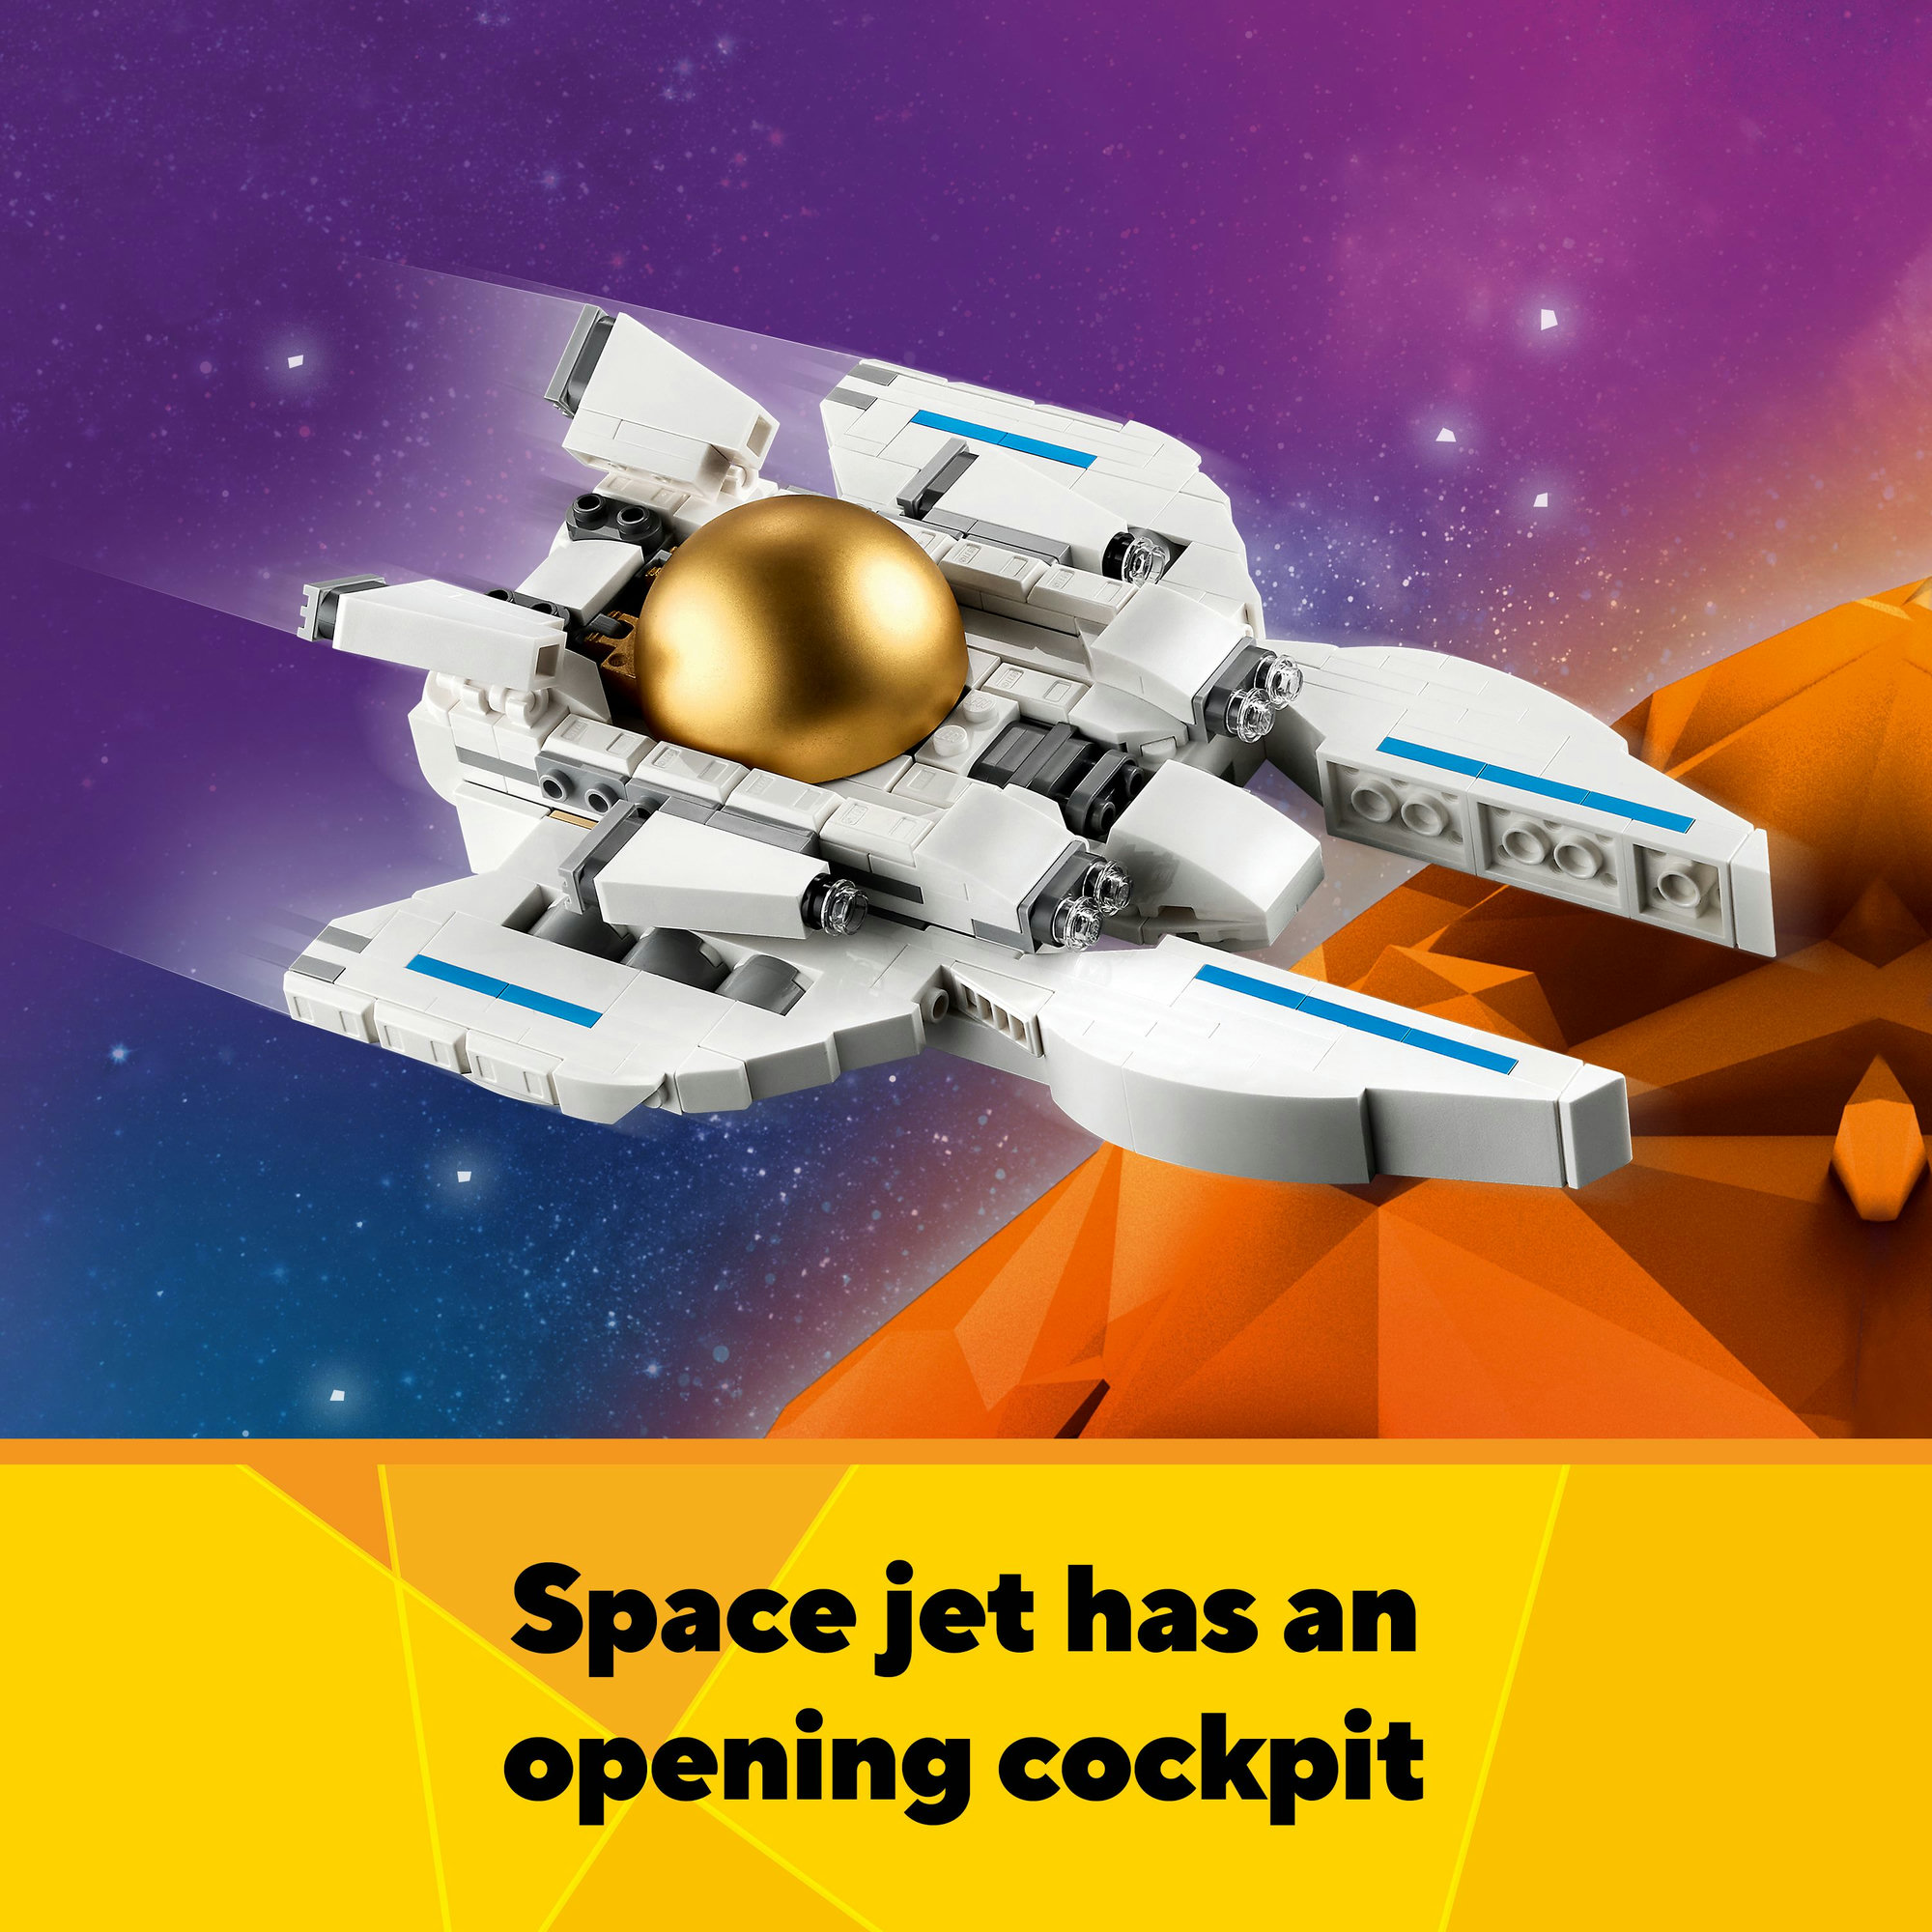 LEGO CREATOR 31152 Đồ chơi lắp ráp Mô hình phi hành gia (647 chi tiết)